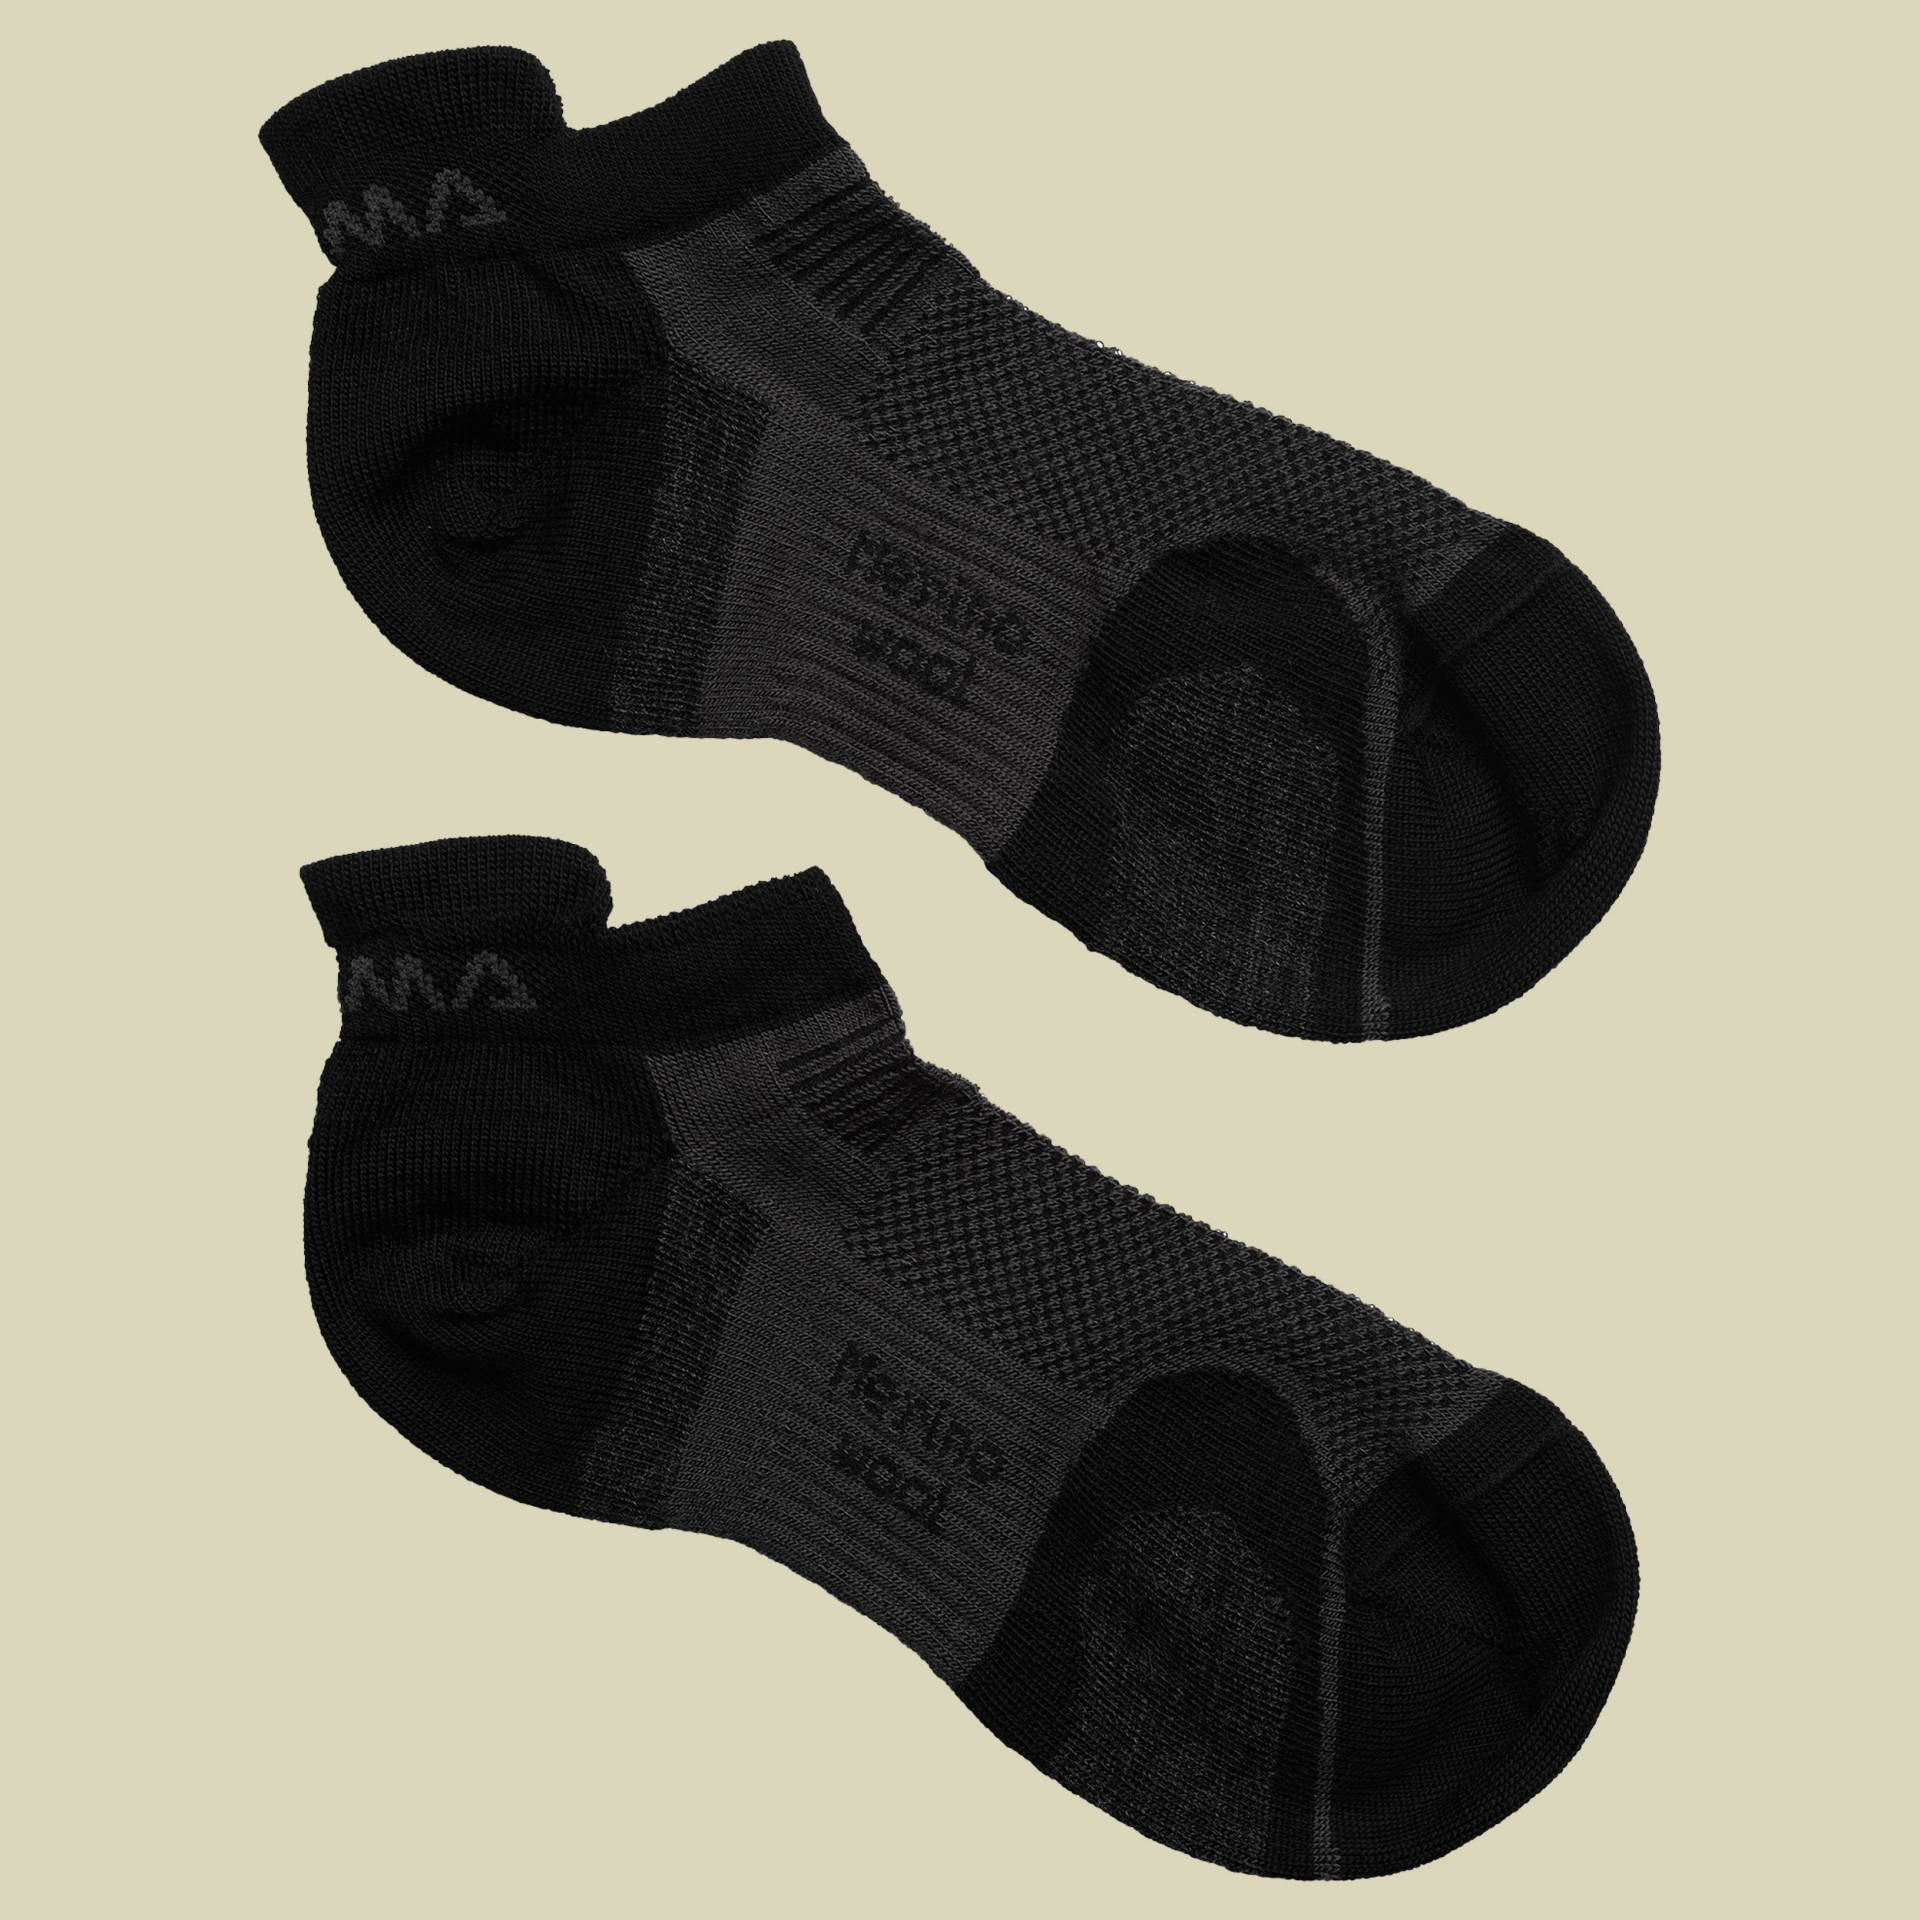 Ankle Socks Größe 44-48 Farbe iron gate/jet black von aclima